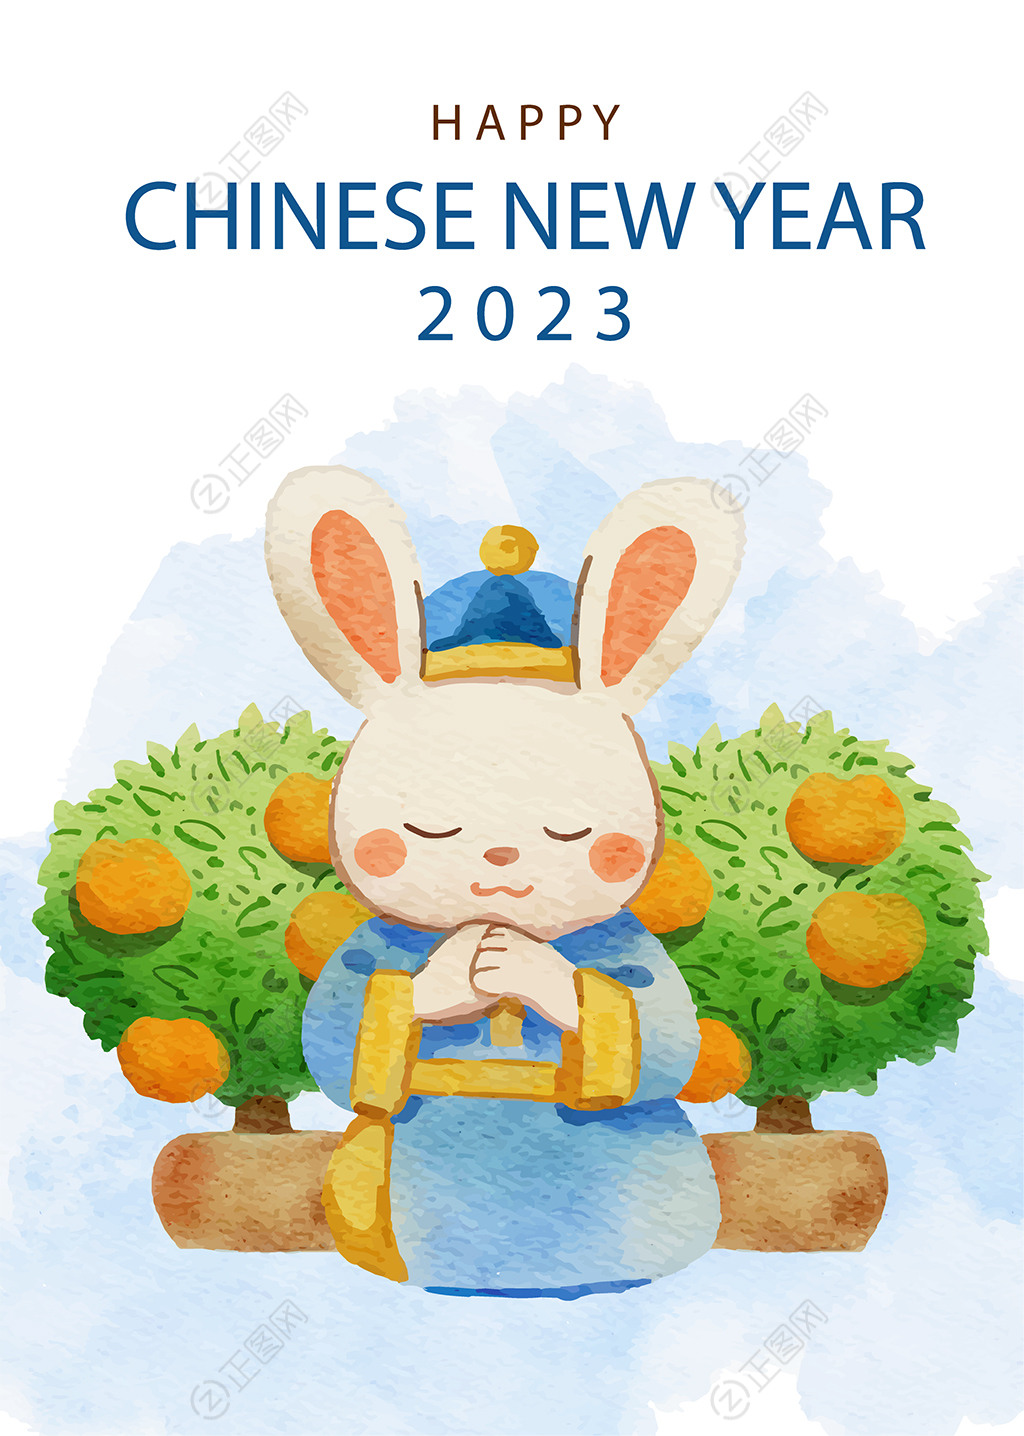 卡通兔子祈福新年春节海报